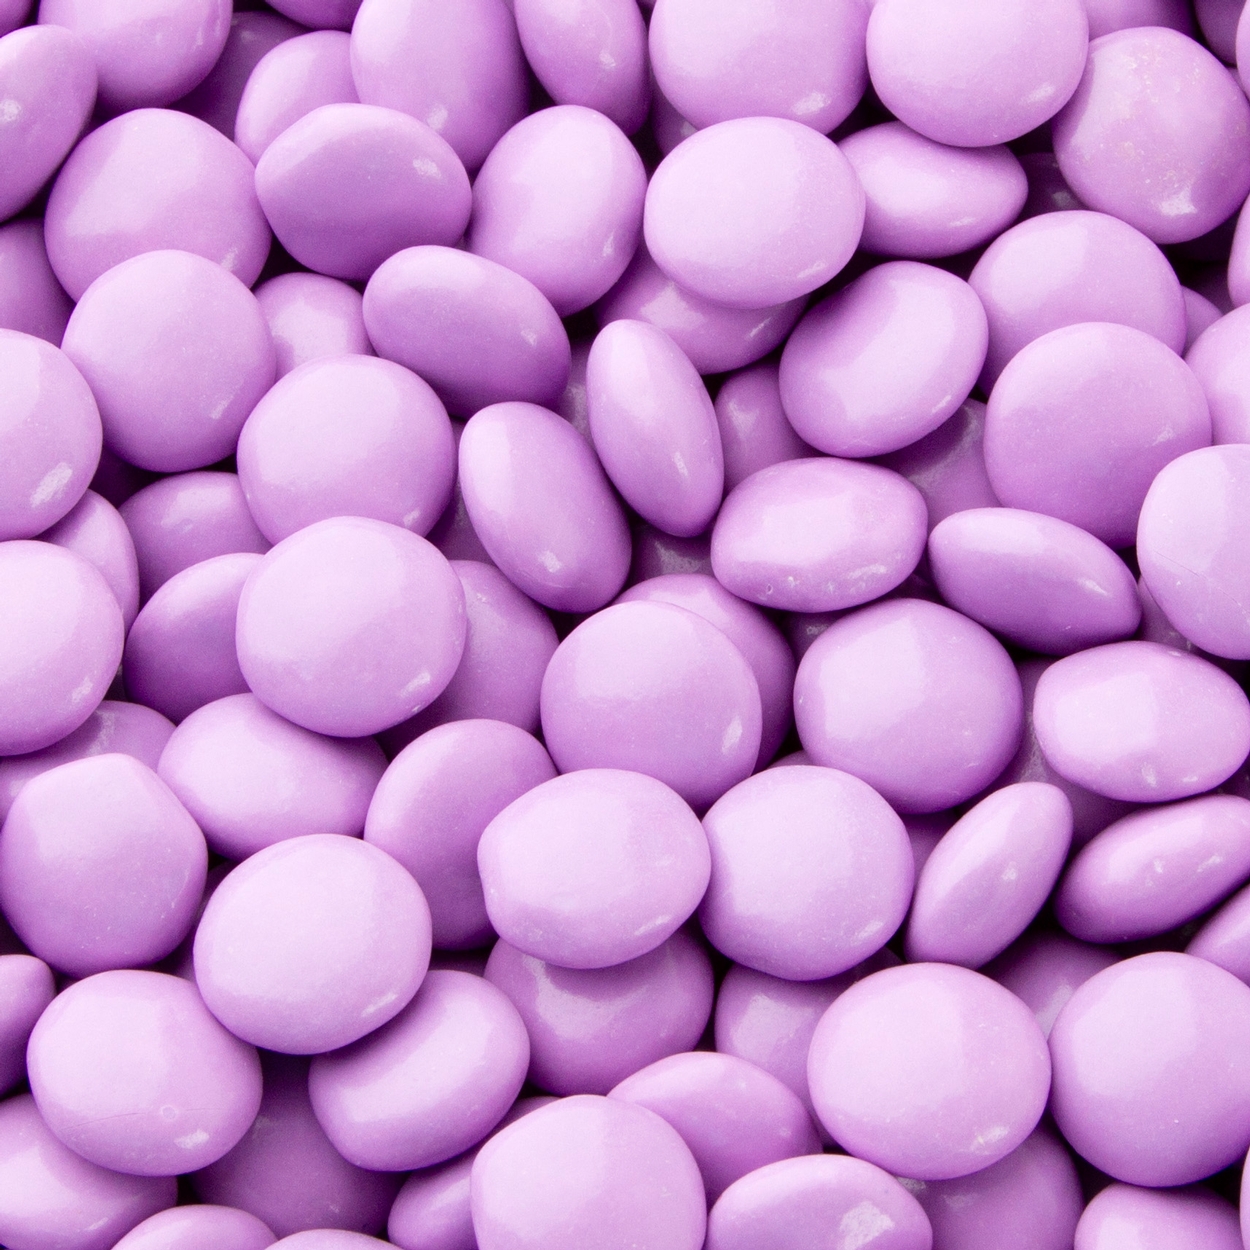 Lavender Bulk Buttons